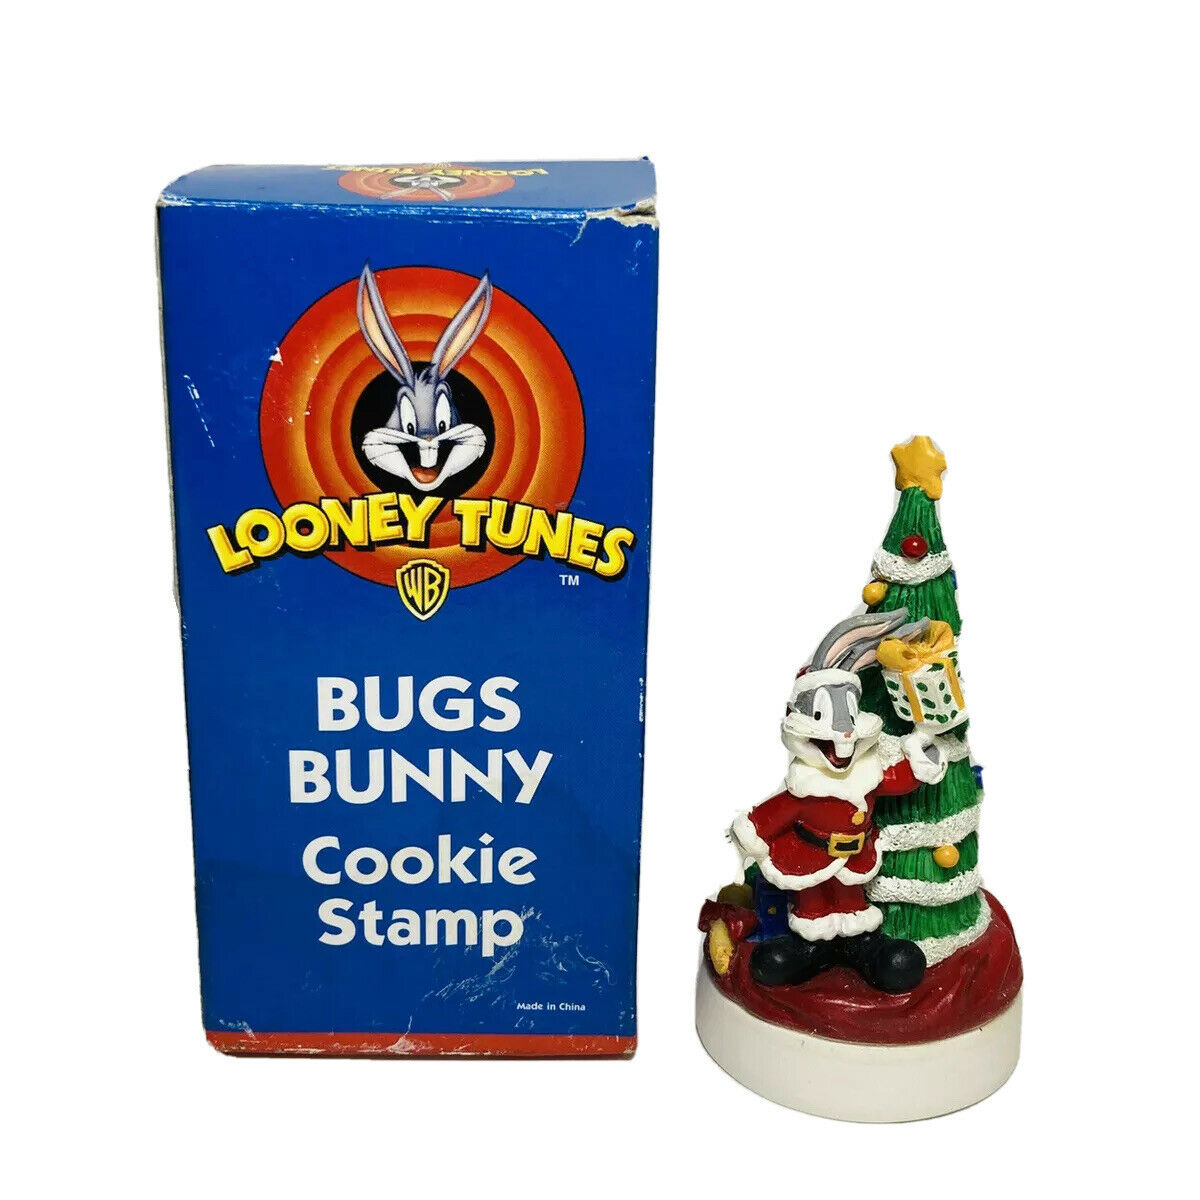 Looney Tunes Bugs Bunny Christmas Santa Cookie Stamp Warner Brothers New Vintage